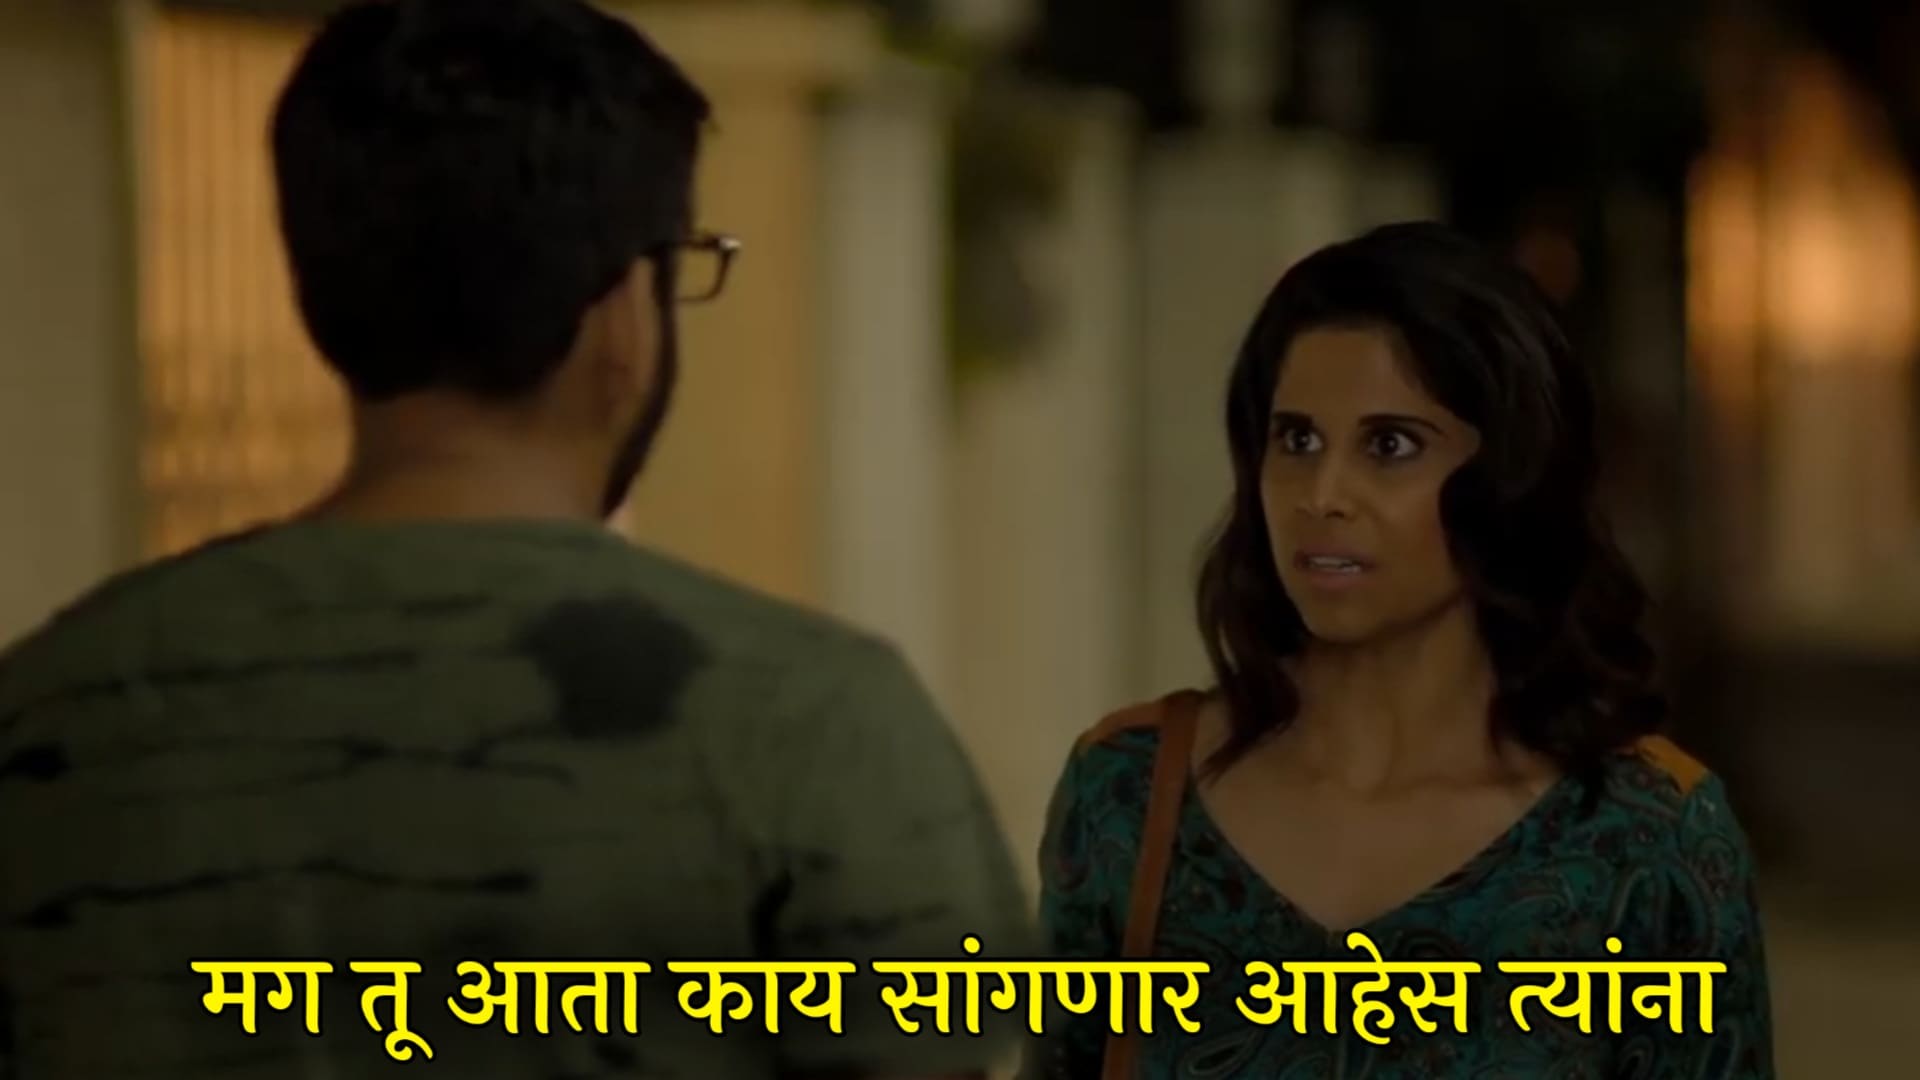 Sai Tamhankar Girlfriend Movie Dialogues Meme Templates